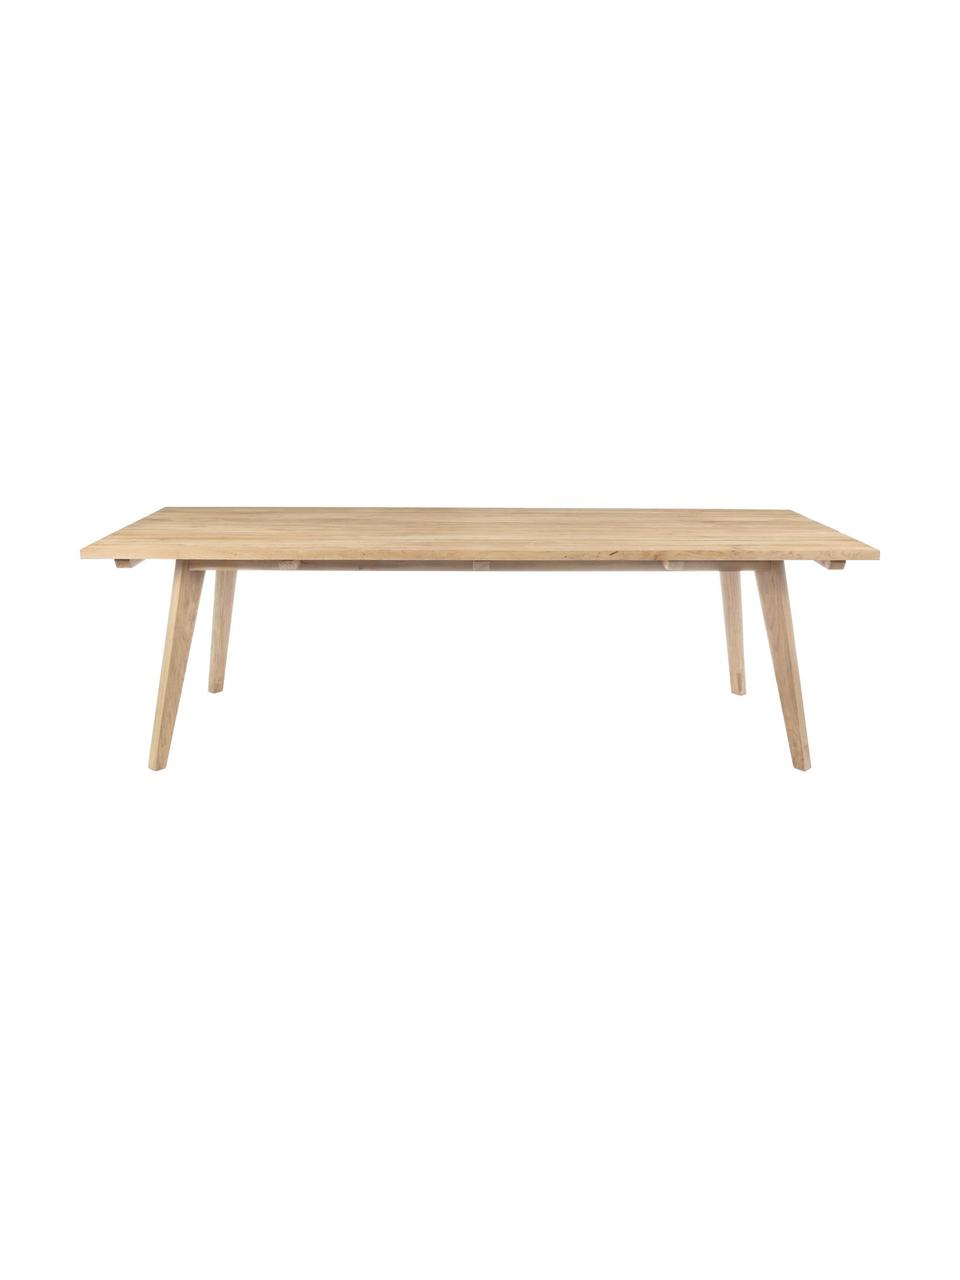 Table de jardin en bois de teck Kendari, Bois de teck recyclé et non traité
Certifié FSC, Teck, l 260 x p 100 cm